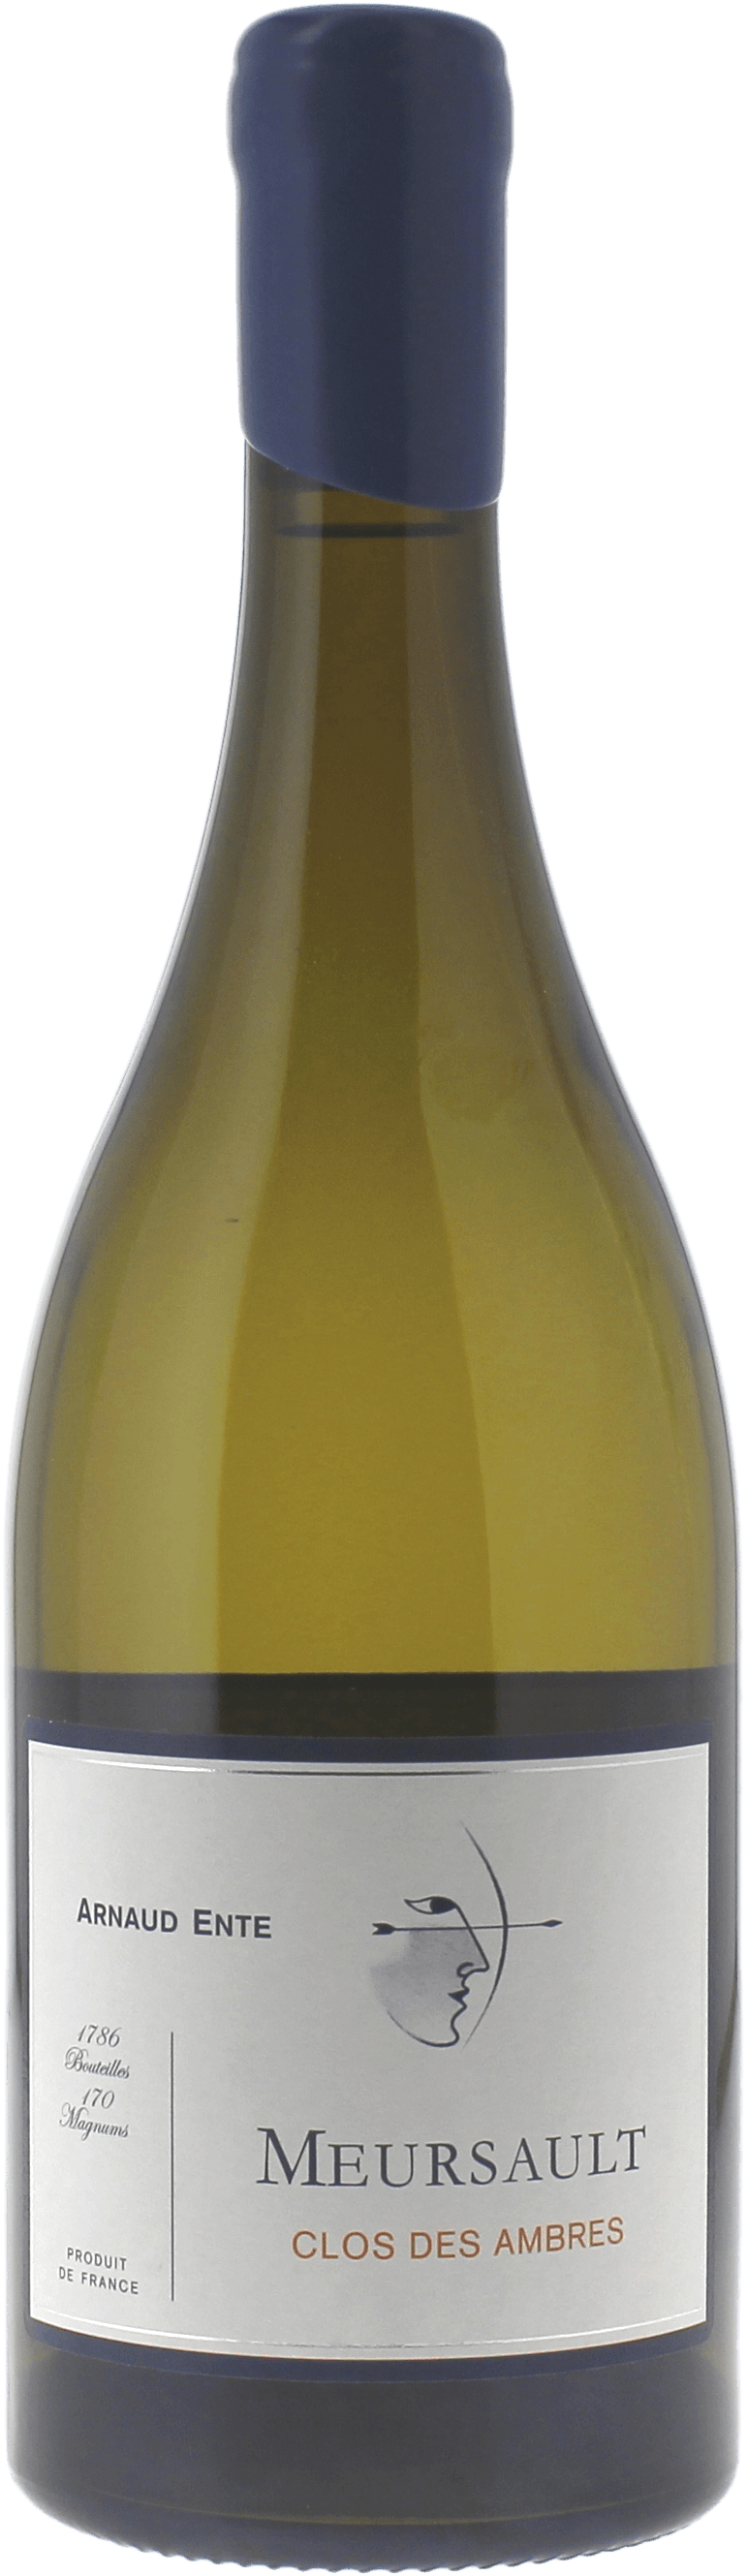 Meursault clos des ambres 2015 Domaine ENTE Arnaud, Bourgogne blanc